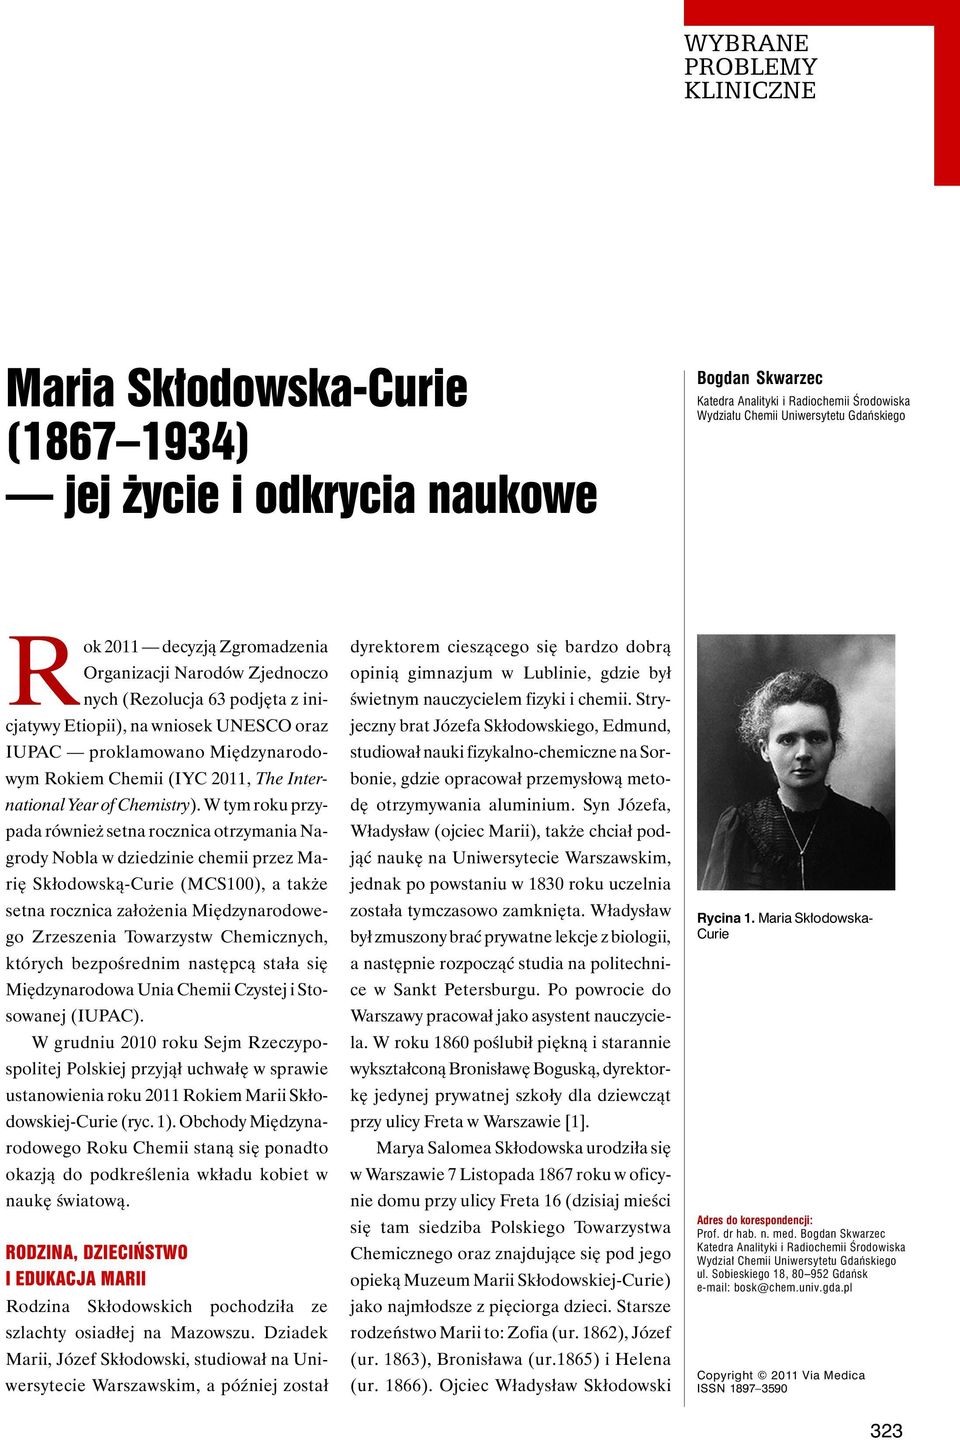 W tym roku przypada również setna rocznica otrzymania Nagrody Nobla w dziedzinie chemii przez Marię Skłodowską-Curie (MCS100), a także setna rocznica założenia Międzynarodowego Zrzeszenia Towarzystw